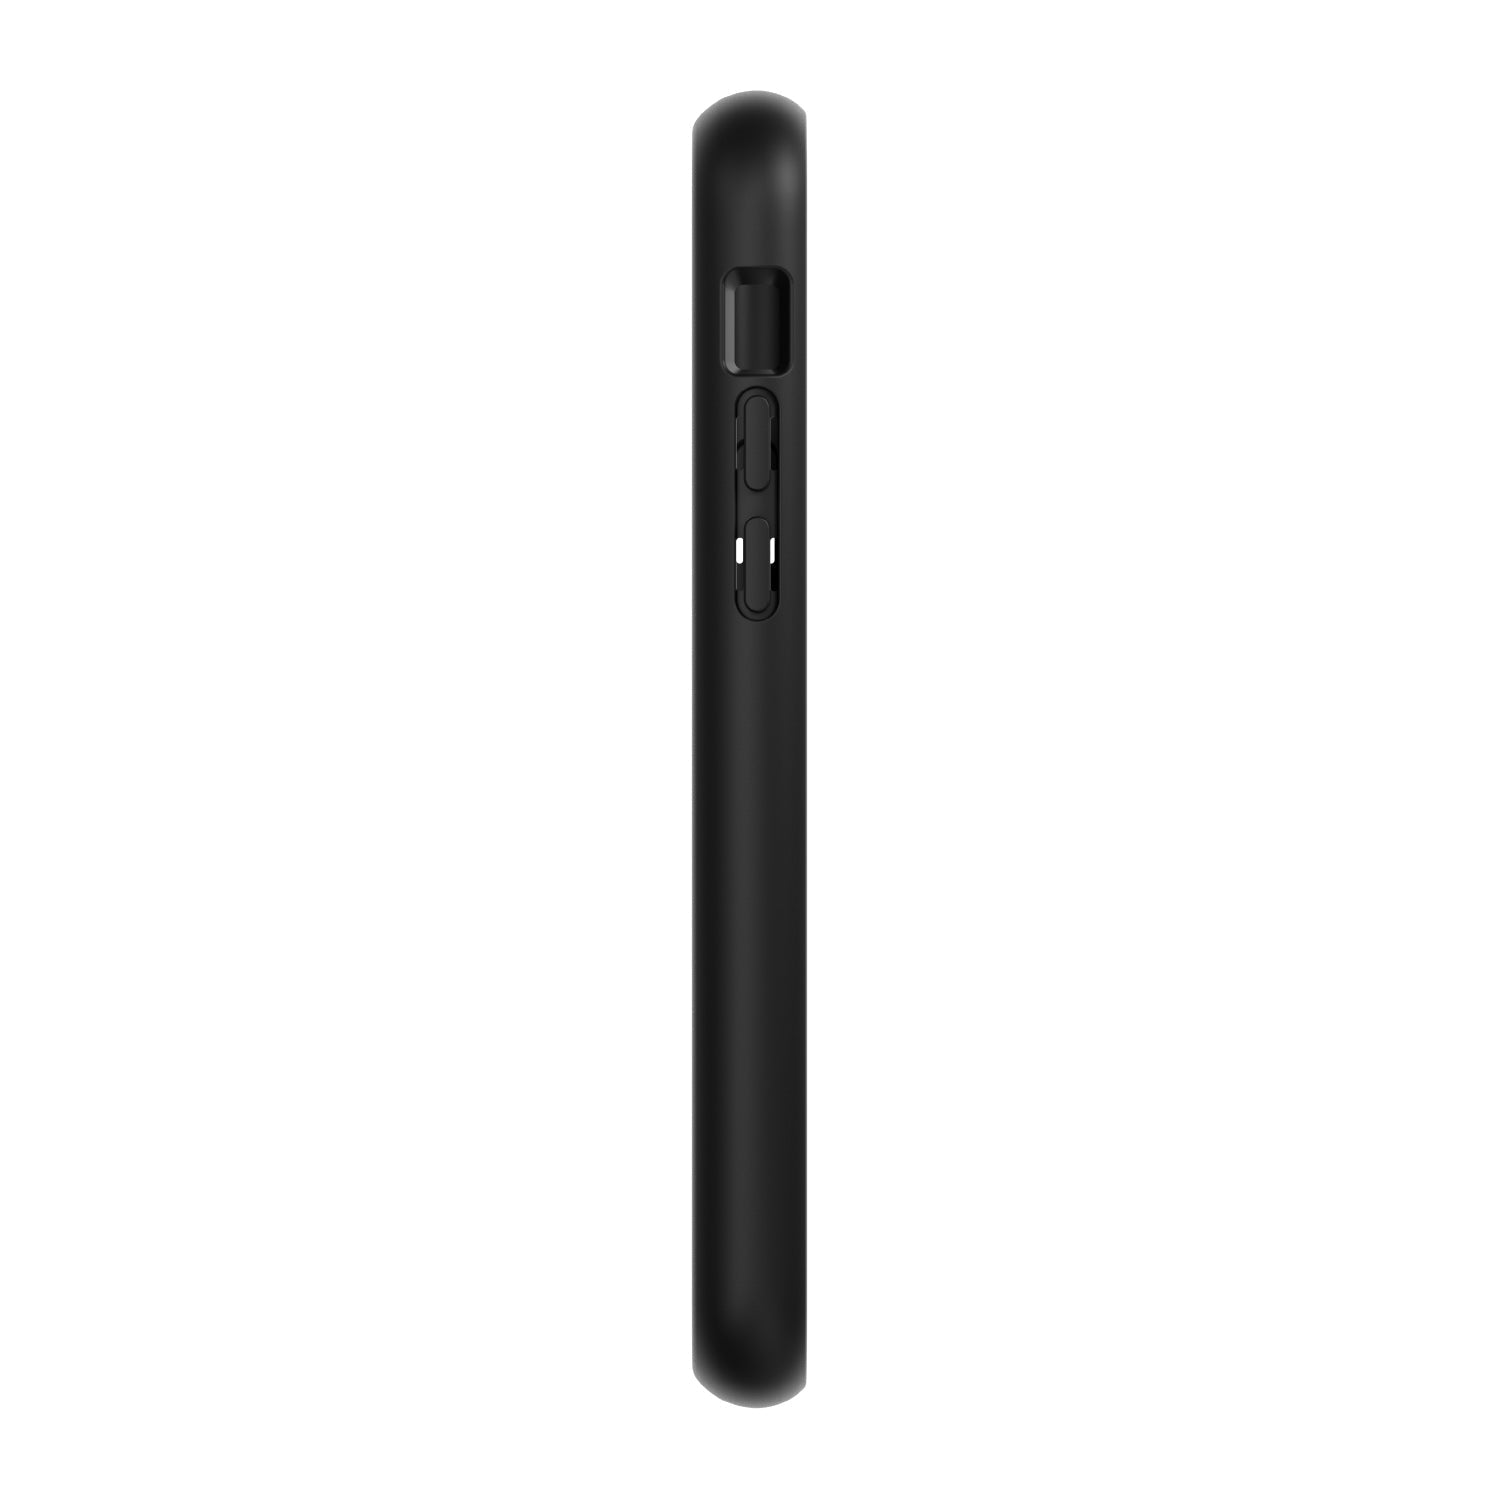 iPhone 11 Pro VACUUM magnetic smartphone case